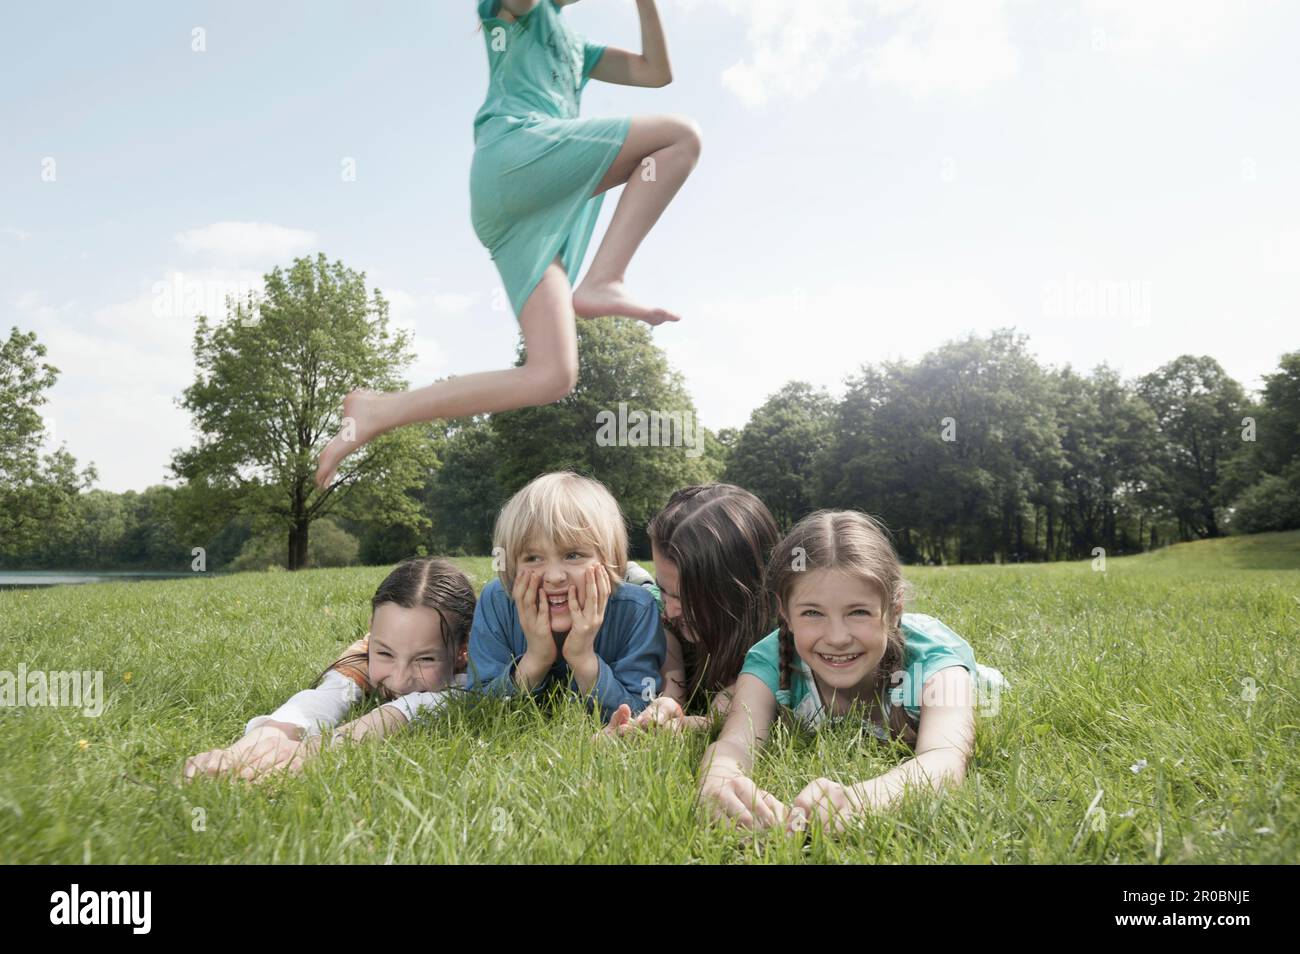 Chica saltando sobre sus amigos tumbados en la hierba en un parque, Munich, Baviera, Alemania Foto de stock